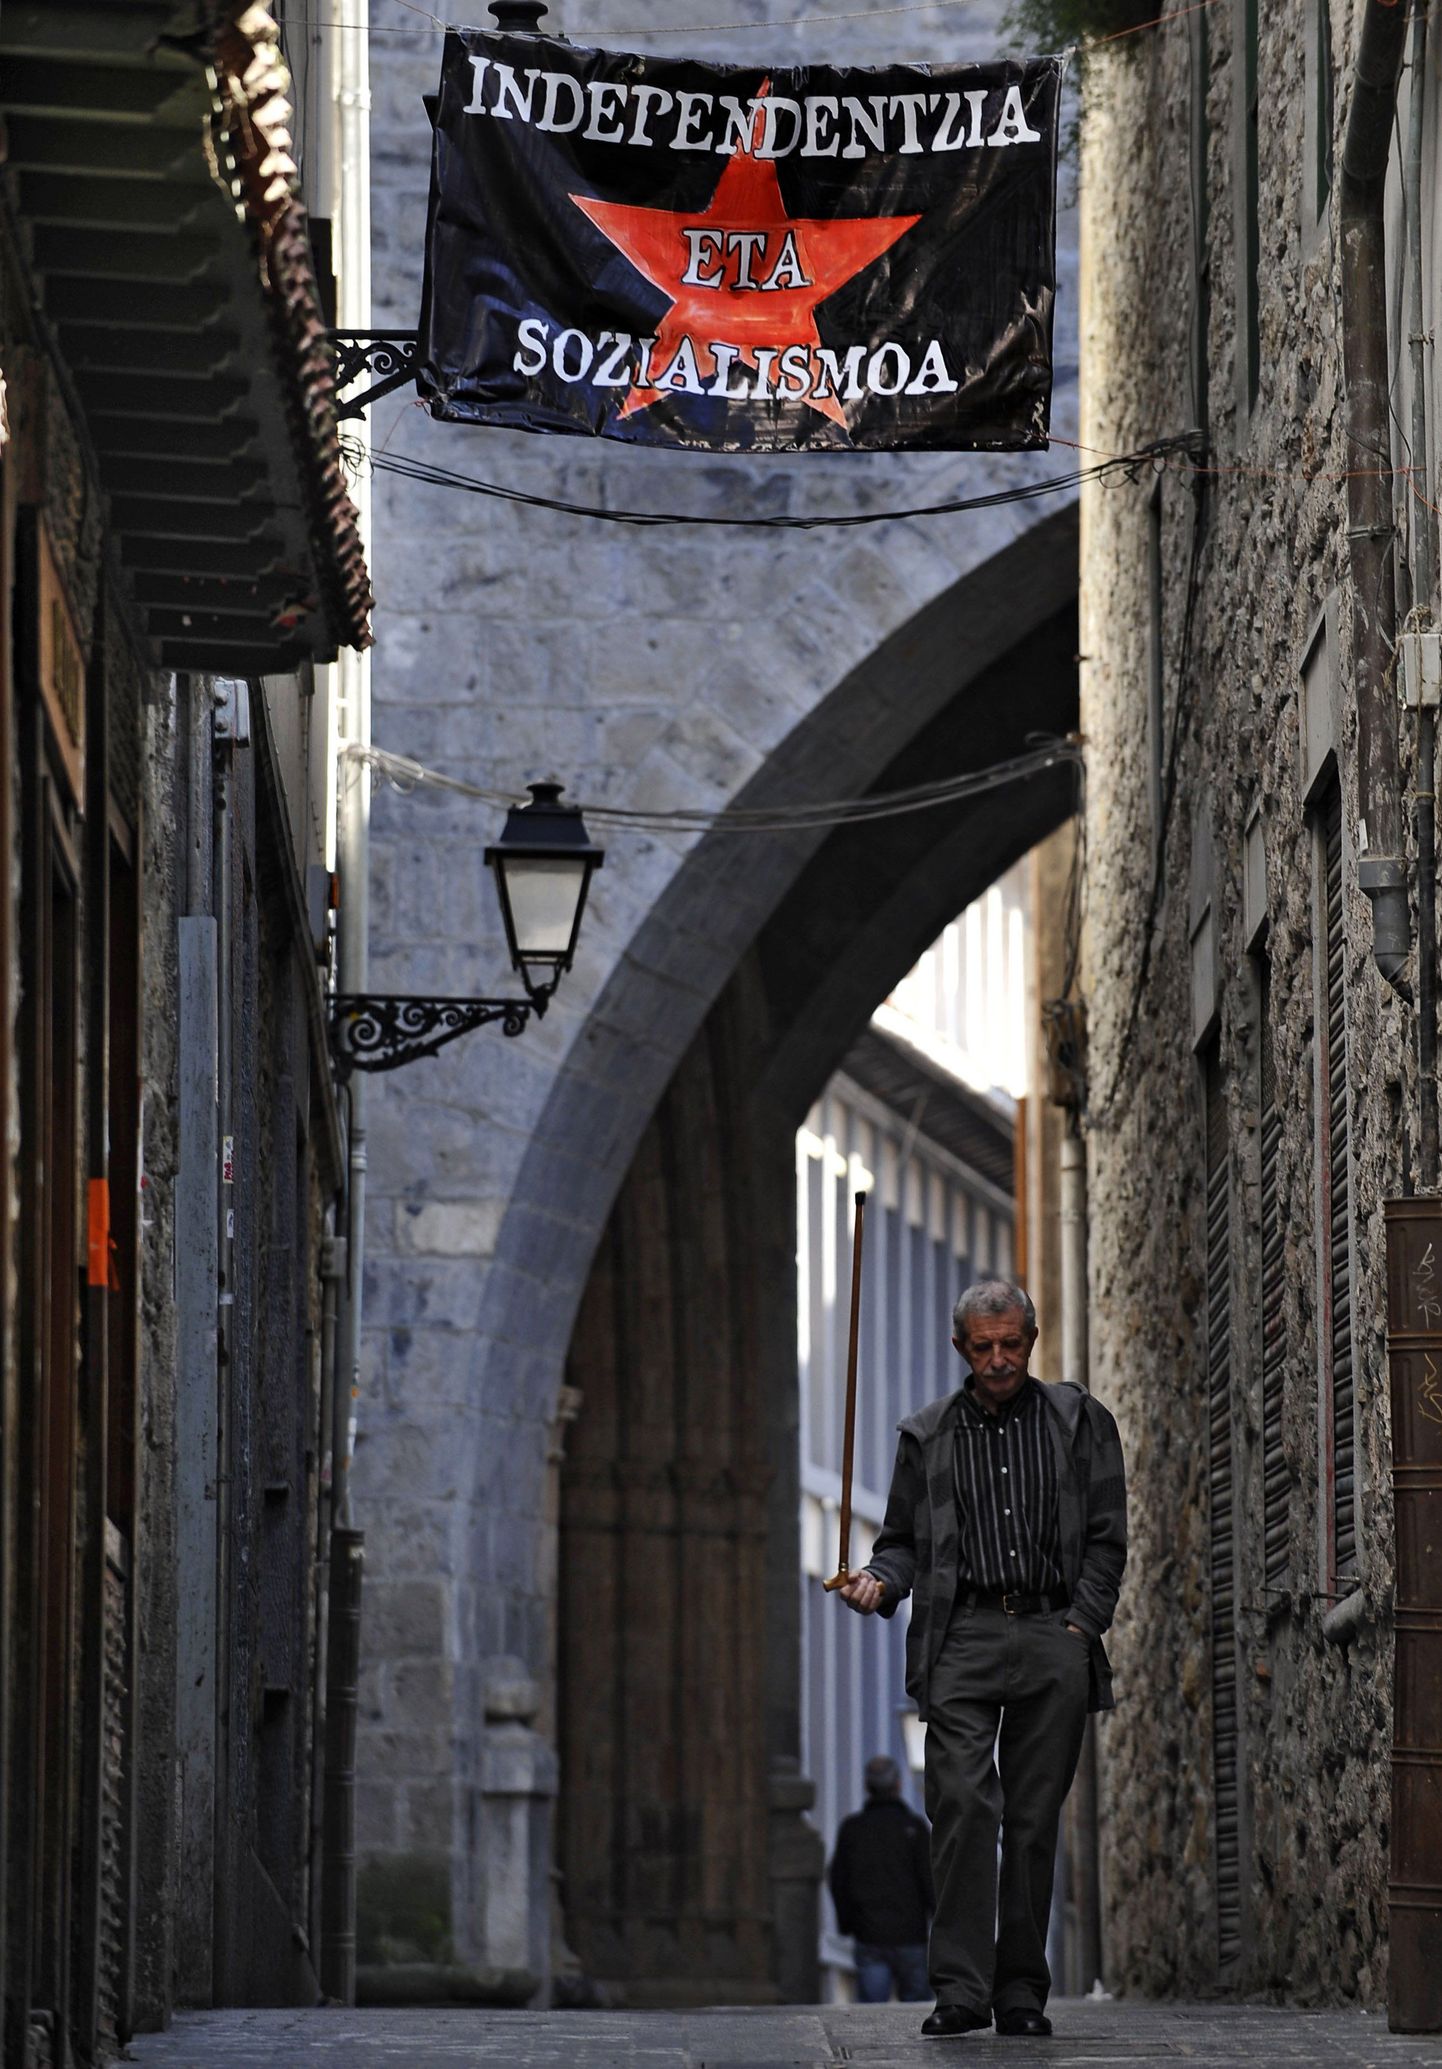 Baskimaa valimiste eel Arrasate linnakeses rippuv loosung kuulutab iseseisvust ja sotsialismi.